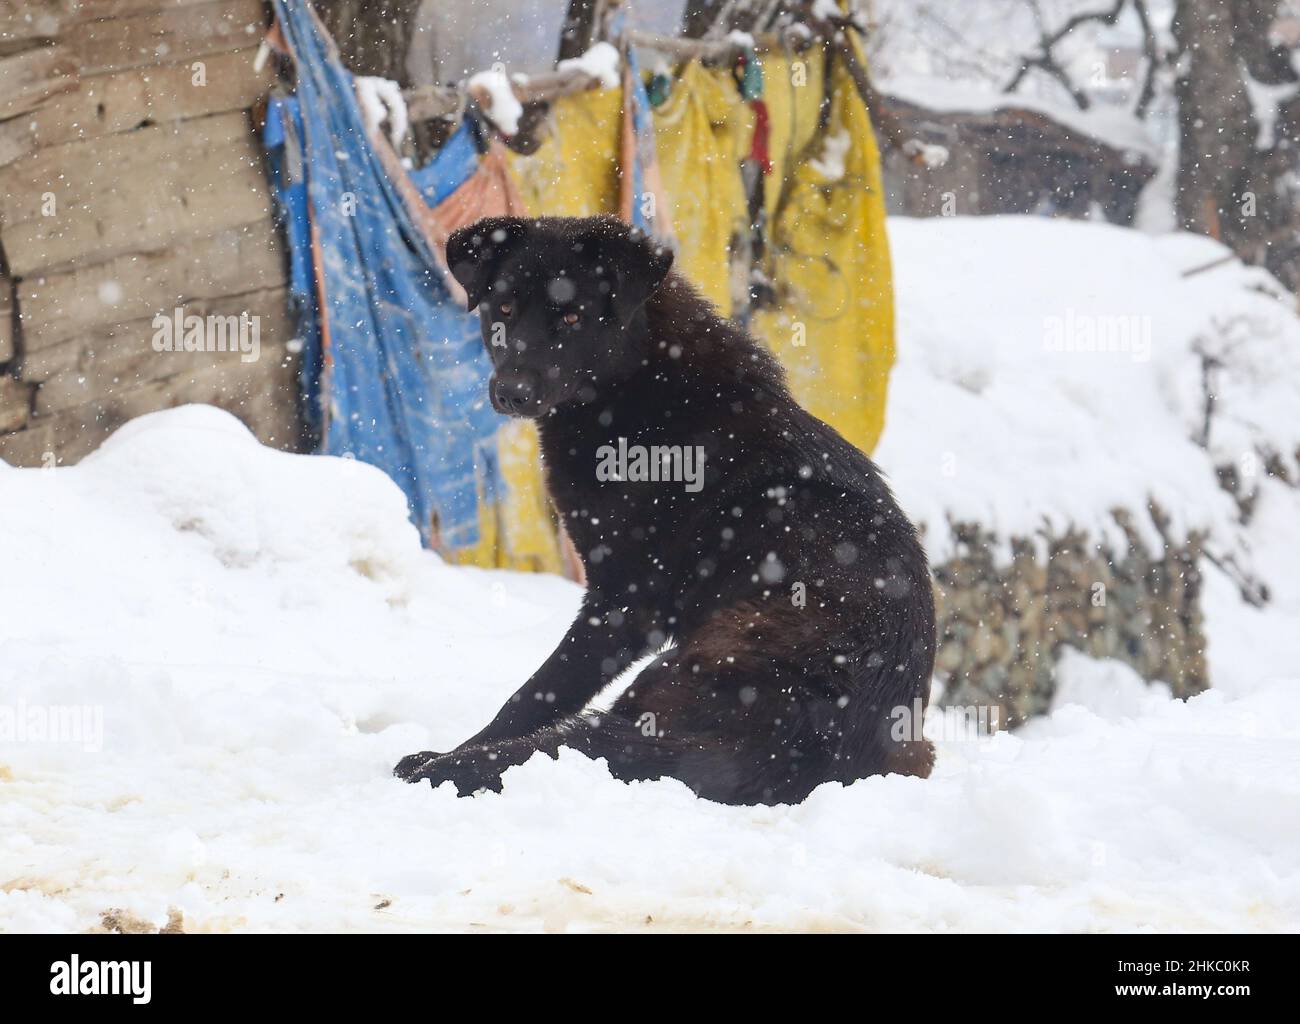 Febbraio 3, 2022, Srinagar, Jammu e Kashmir, India: Un cane randagio visto durante le pesanti nevicate in un villaggio nel distretto settentrionale di Baramulla del Kashmir, circa 35 chilometri a nord di Srinagar, la capitale estiva del Kashmir indiano, (Credit Image: © Sajad Hameed/Pacific Press via ZUMA Press Wire) Foto Stock